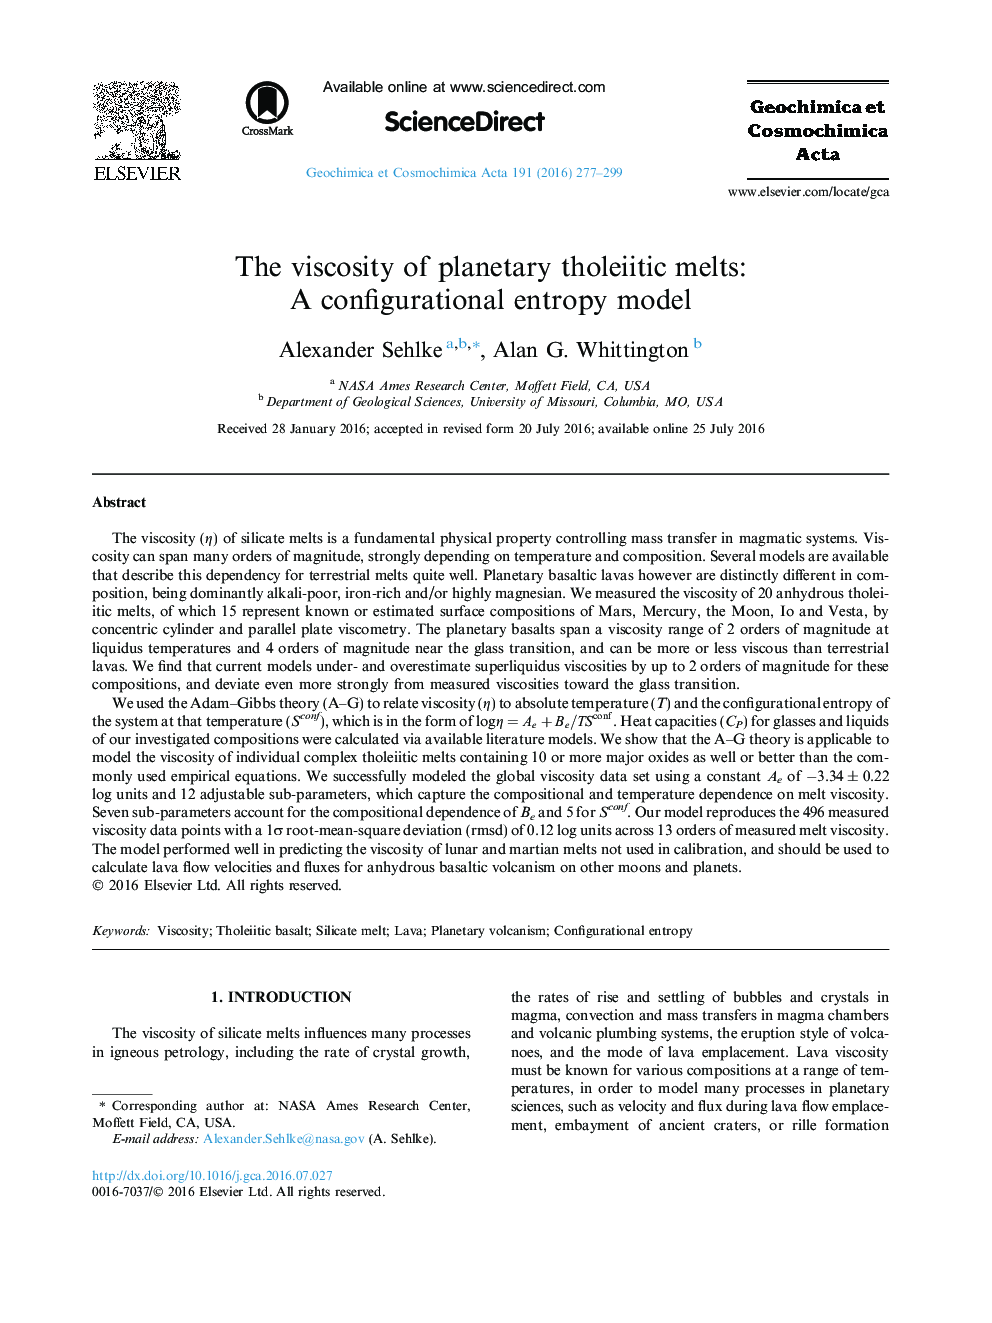 ویسکوزیته ذوبهای تلوییتی سیاره ای: یک مدل آنتروپی پیکربندی 